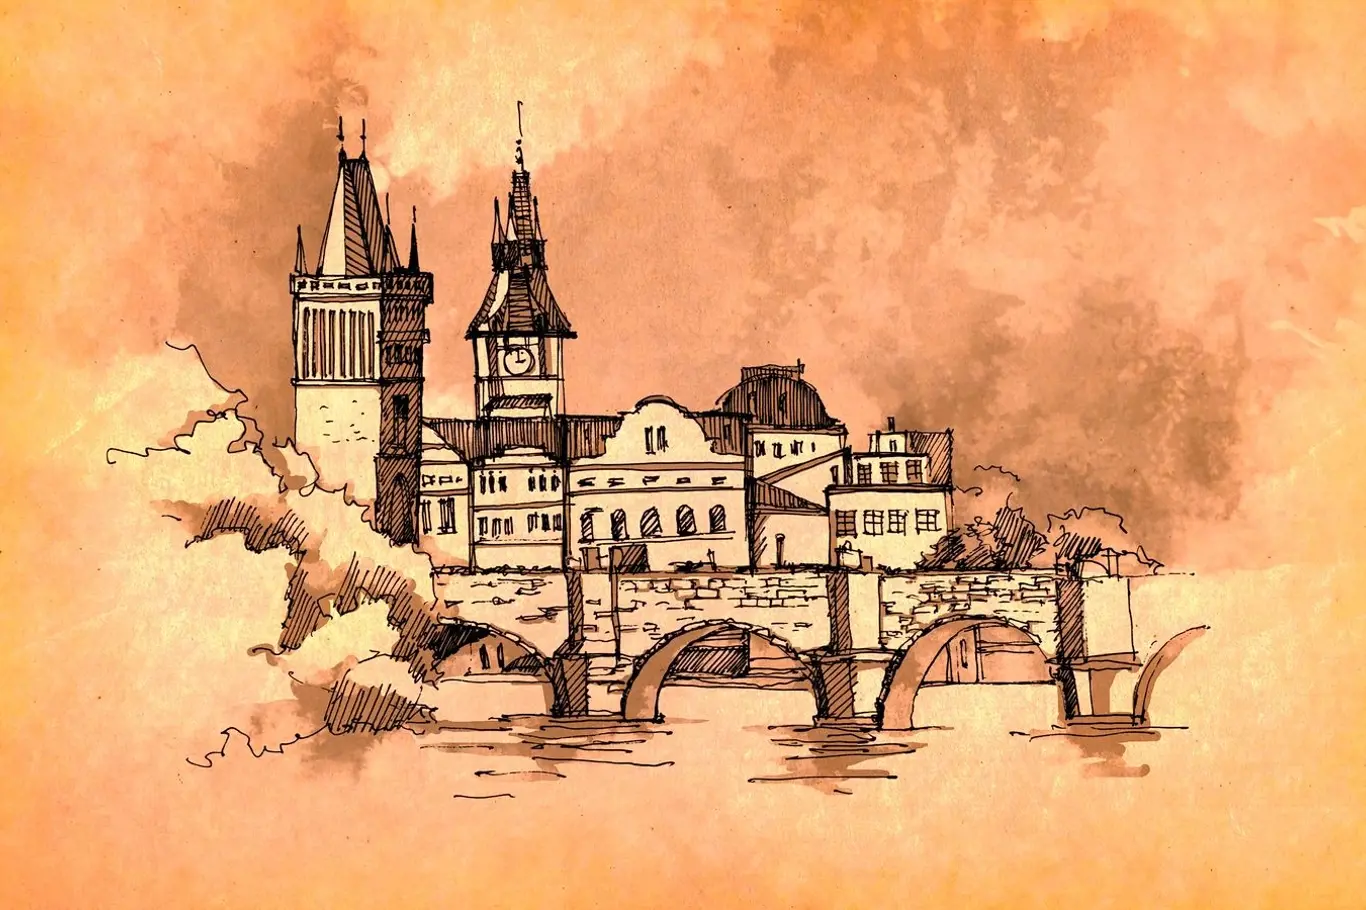 Požár, který zničil středověkou tvář Prahy